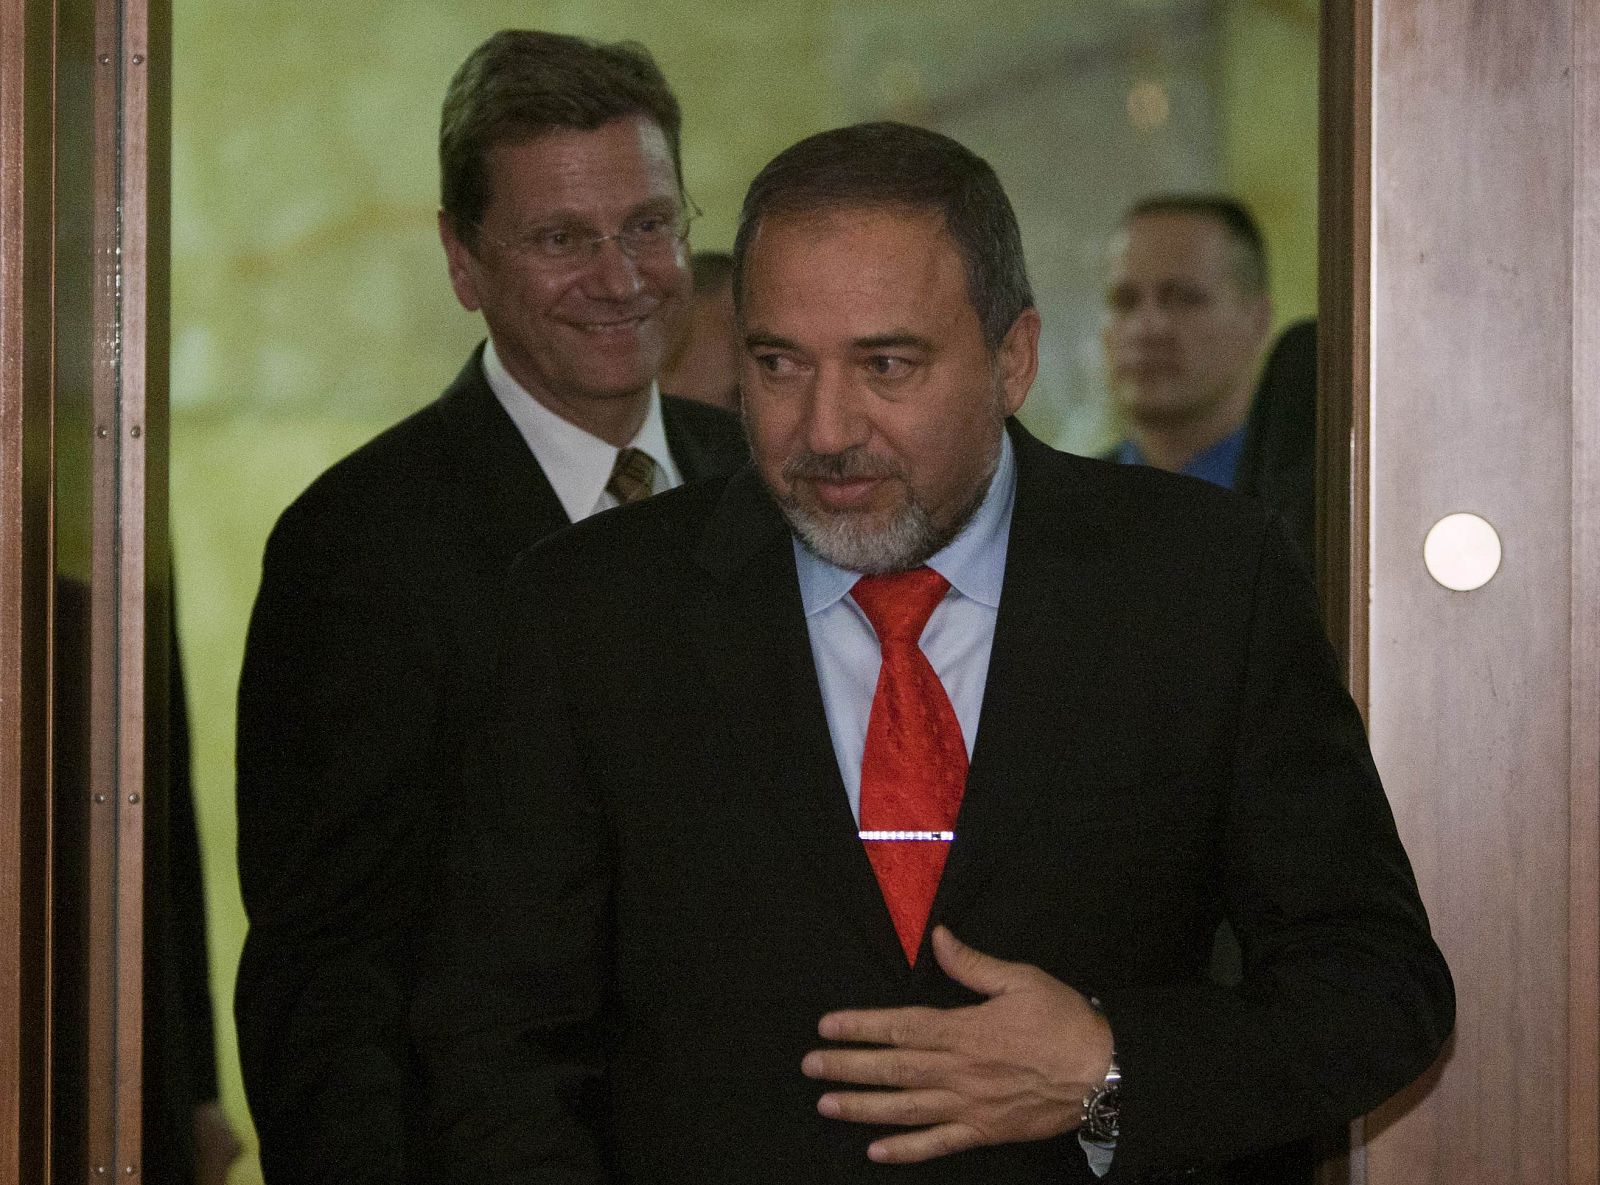 El ministro de Exteriores israelí, Avigdor Lieberman, se enfrenta a cargos criminales por corrupción